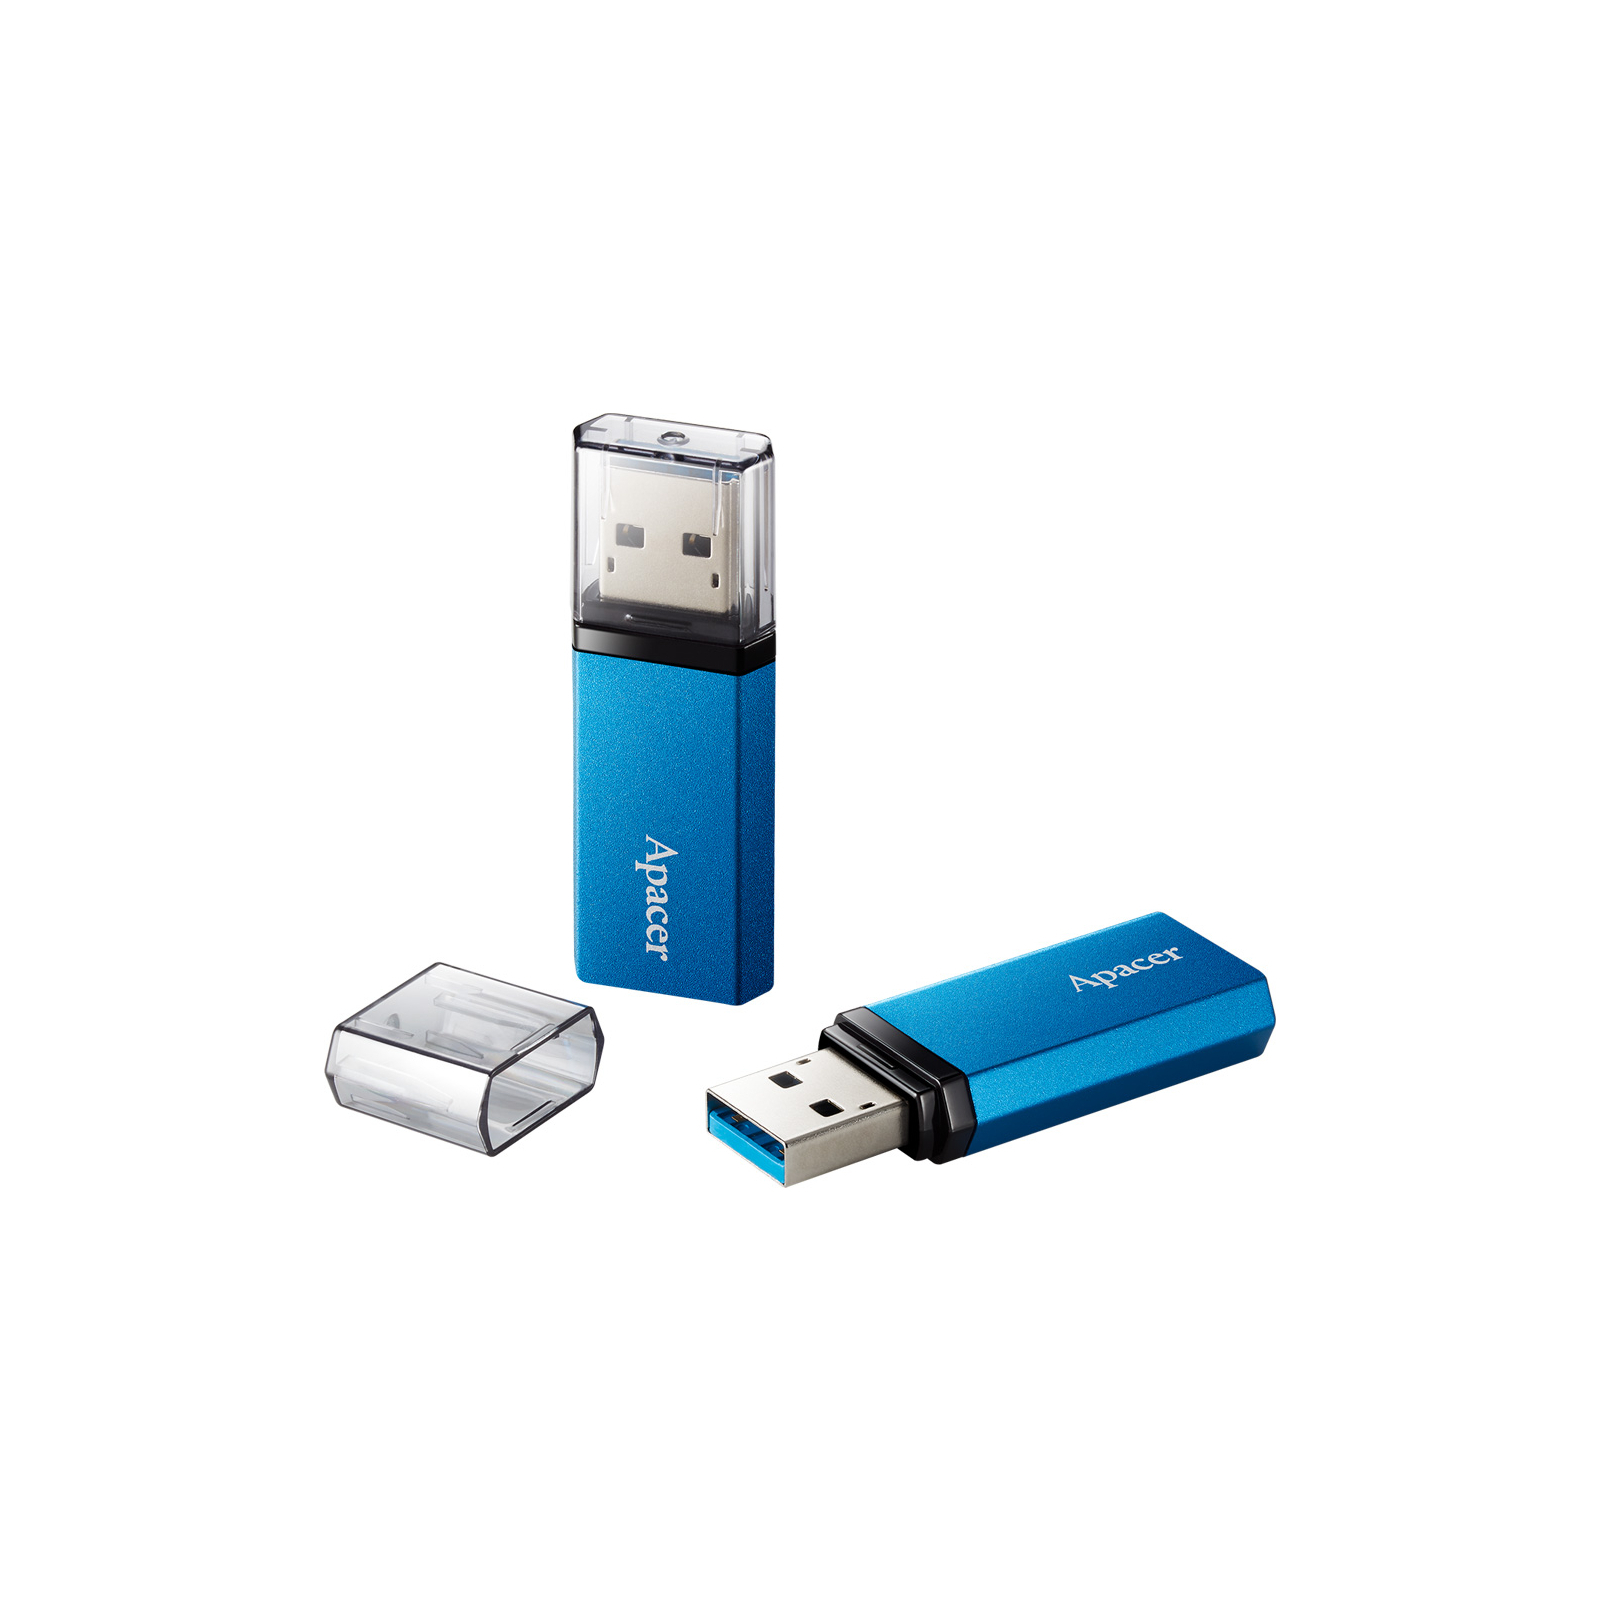 USB флеш накопитель Apacer 128GB AH25C Ocean Blue USB 3.0 (AP128GAH25CU-1) изображение 3